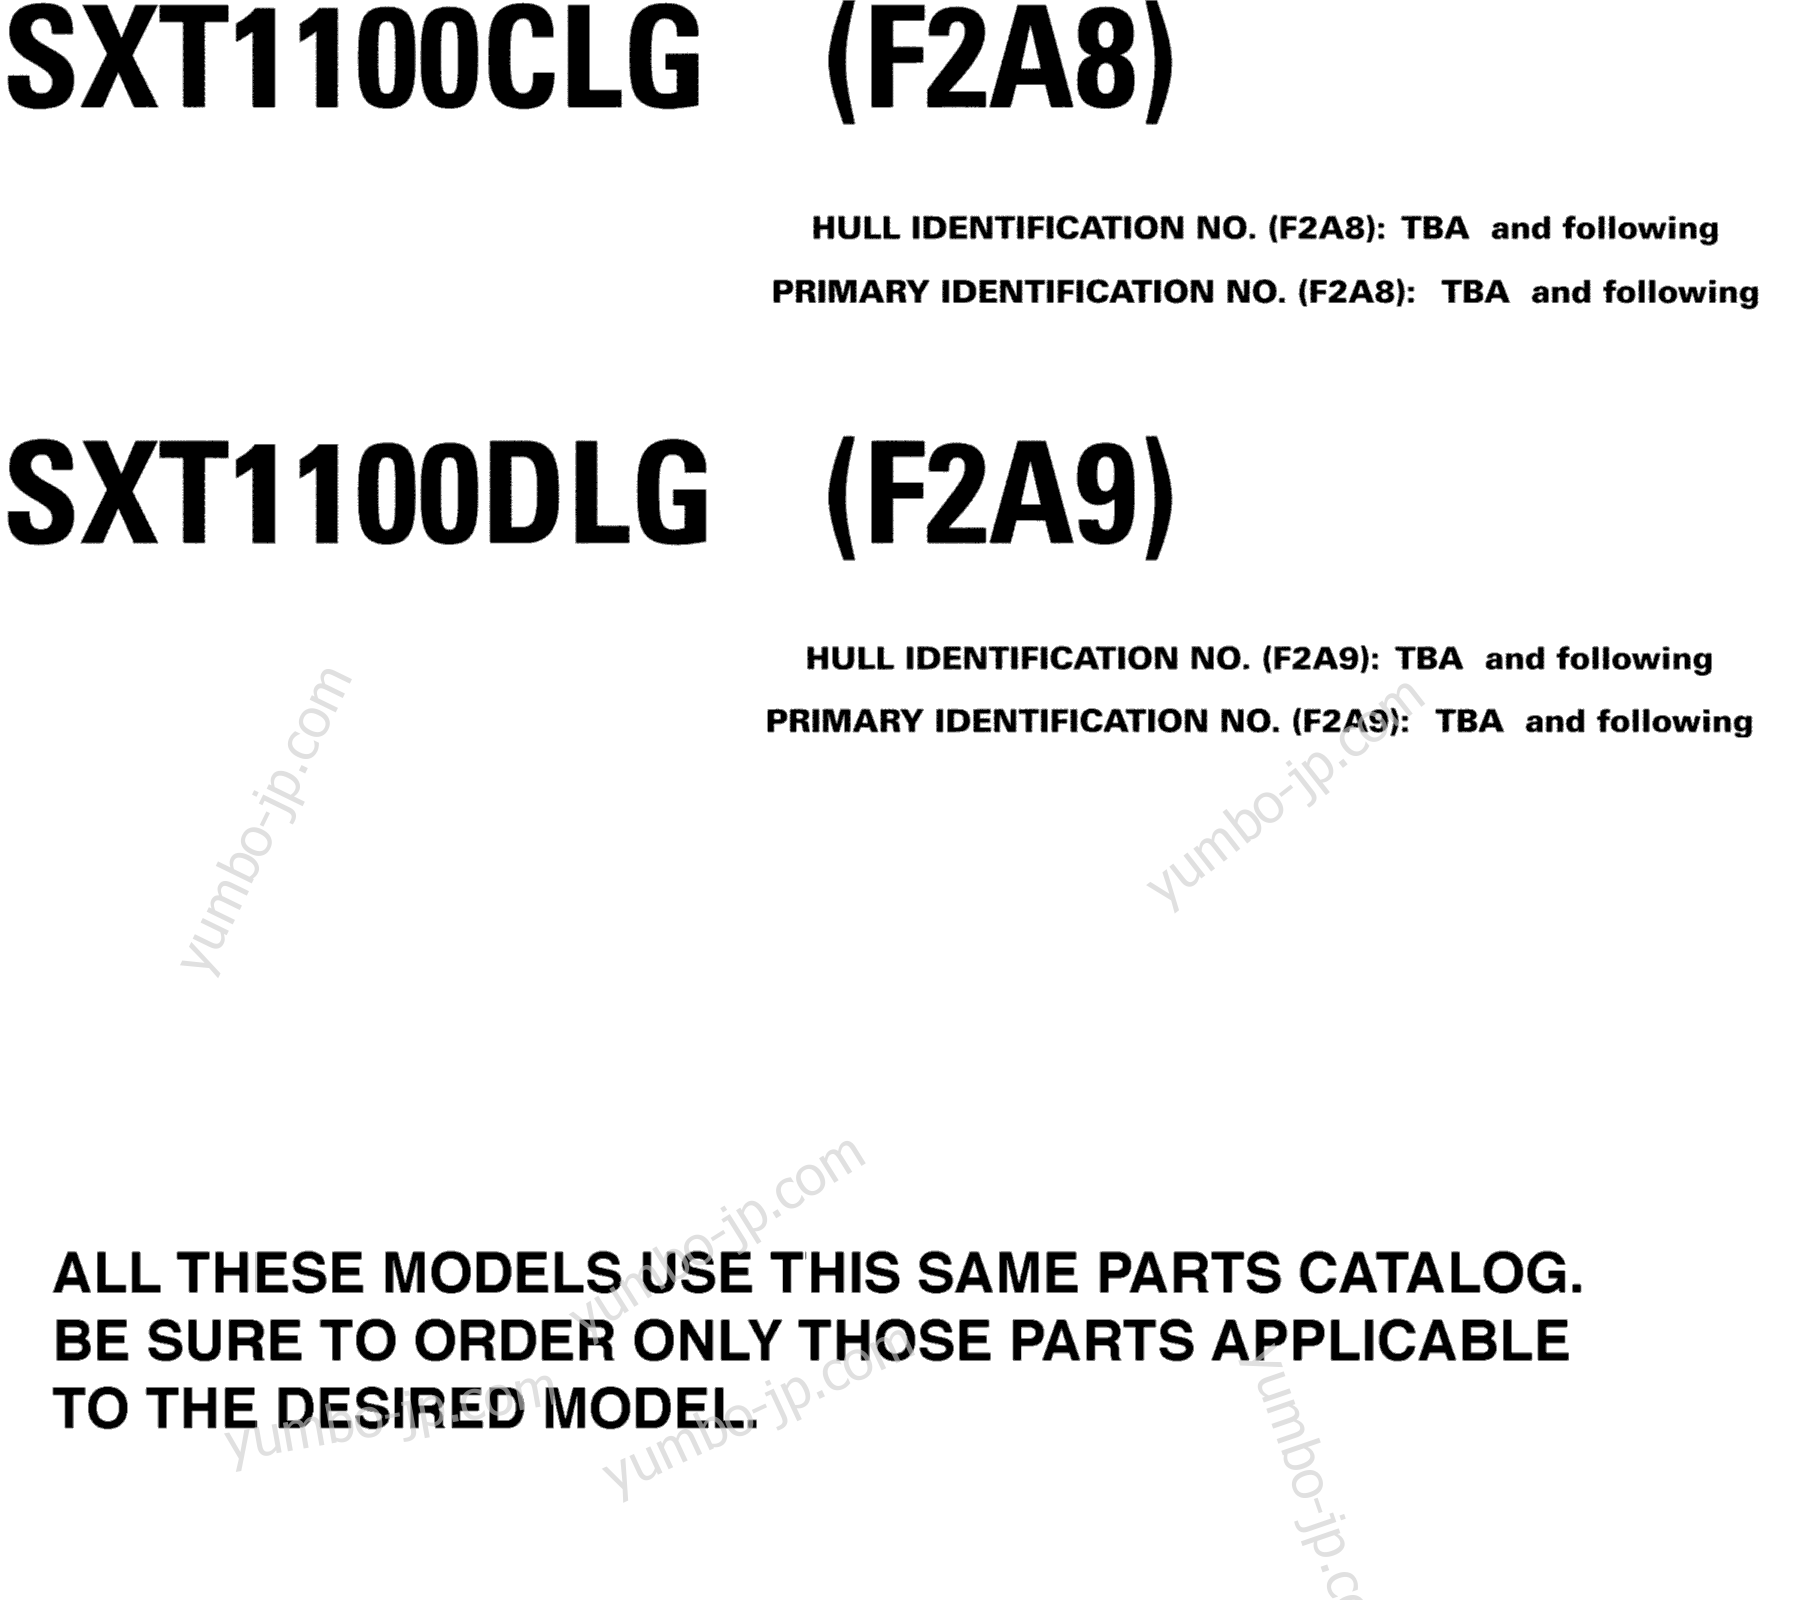 Models In This Catalog for boats YAMAHA SX230 HO CA & NY (SXT1100DLG) CA 2008 year